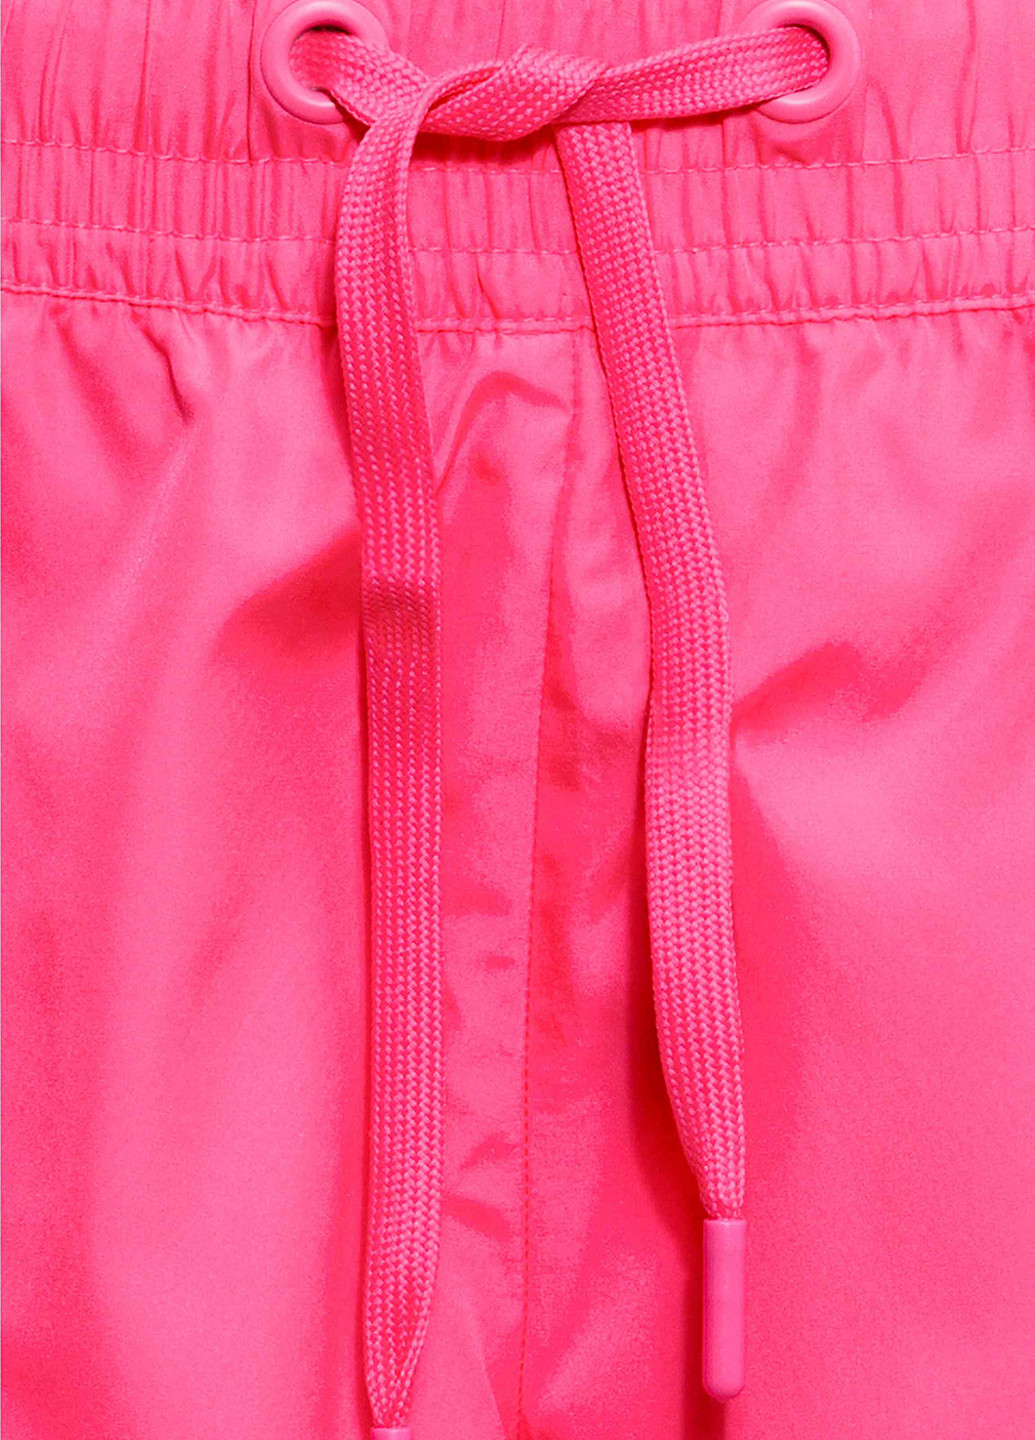 Шорты H&M однотонные розовые спортивные